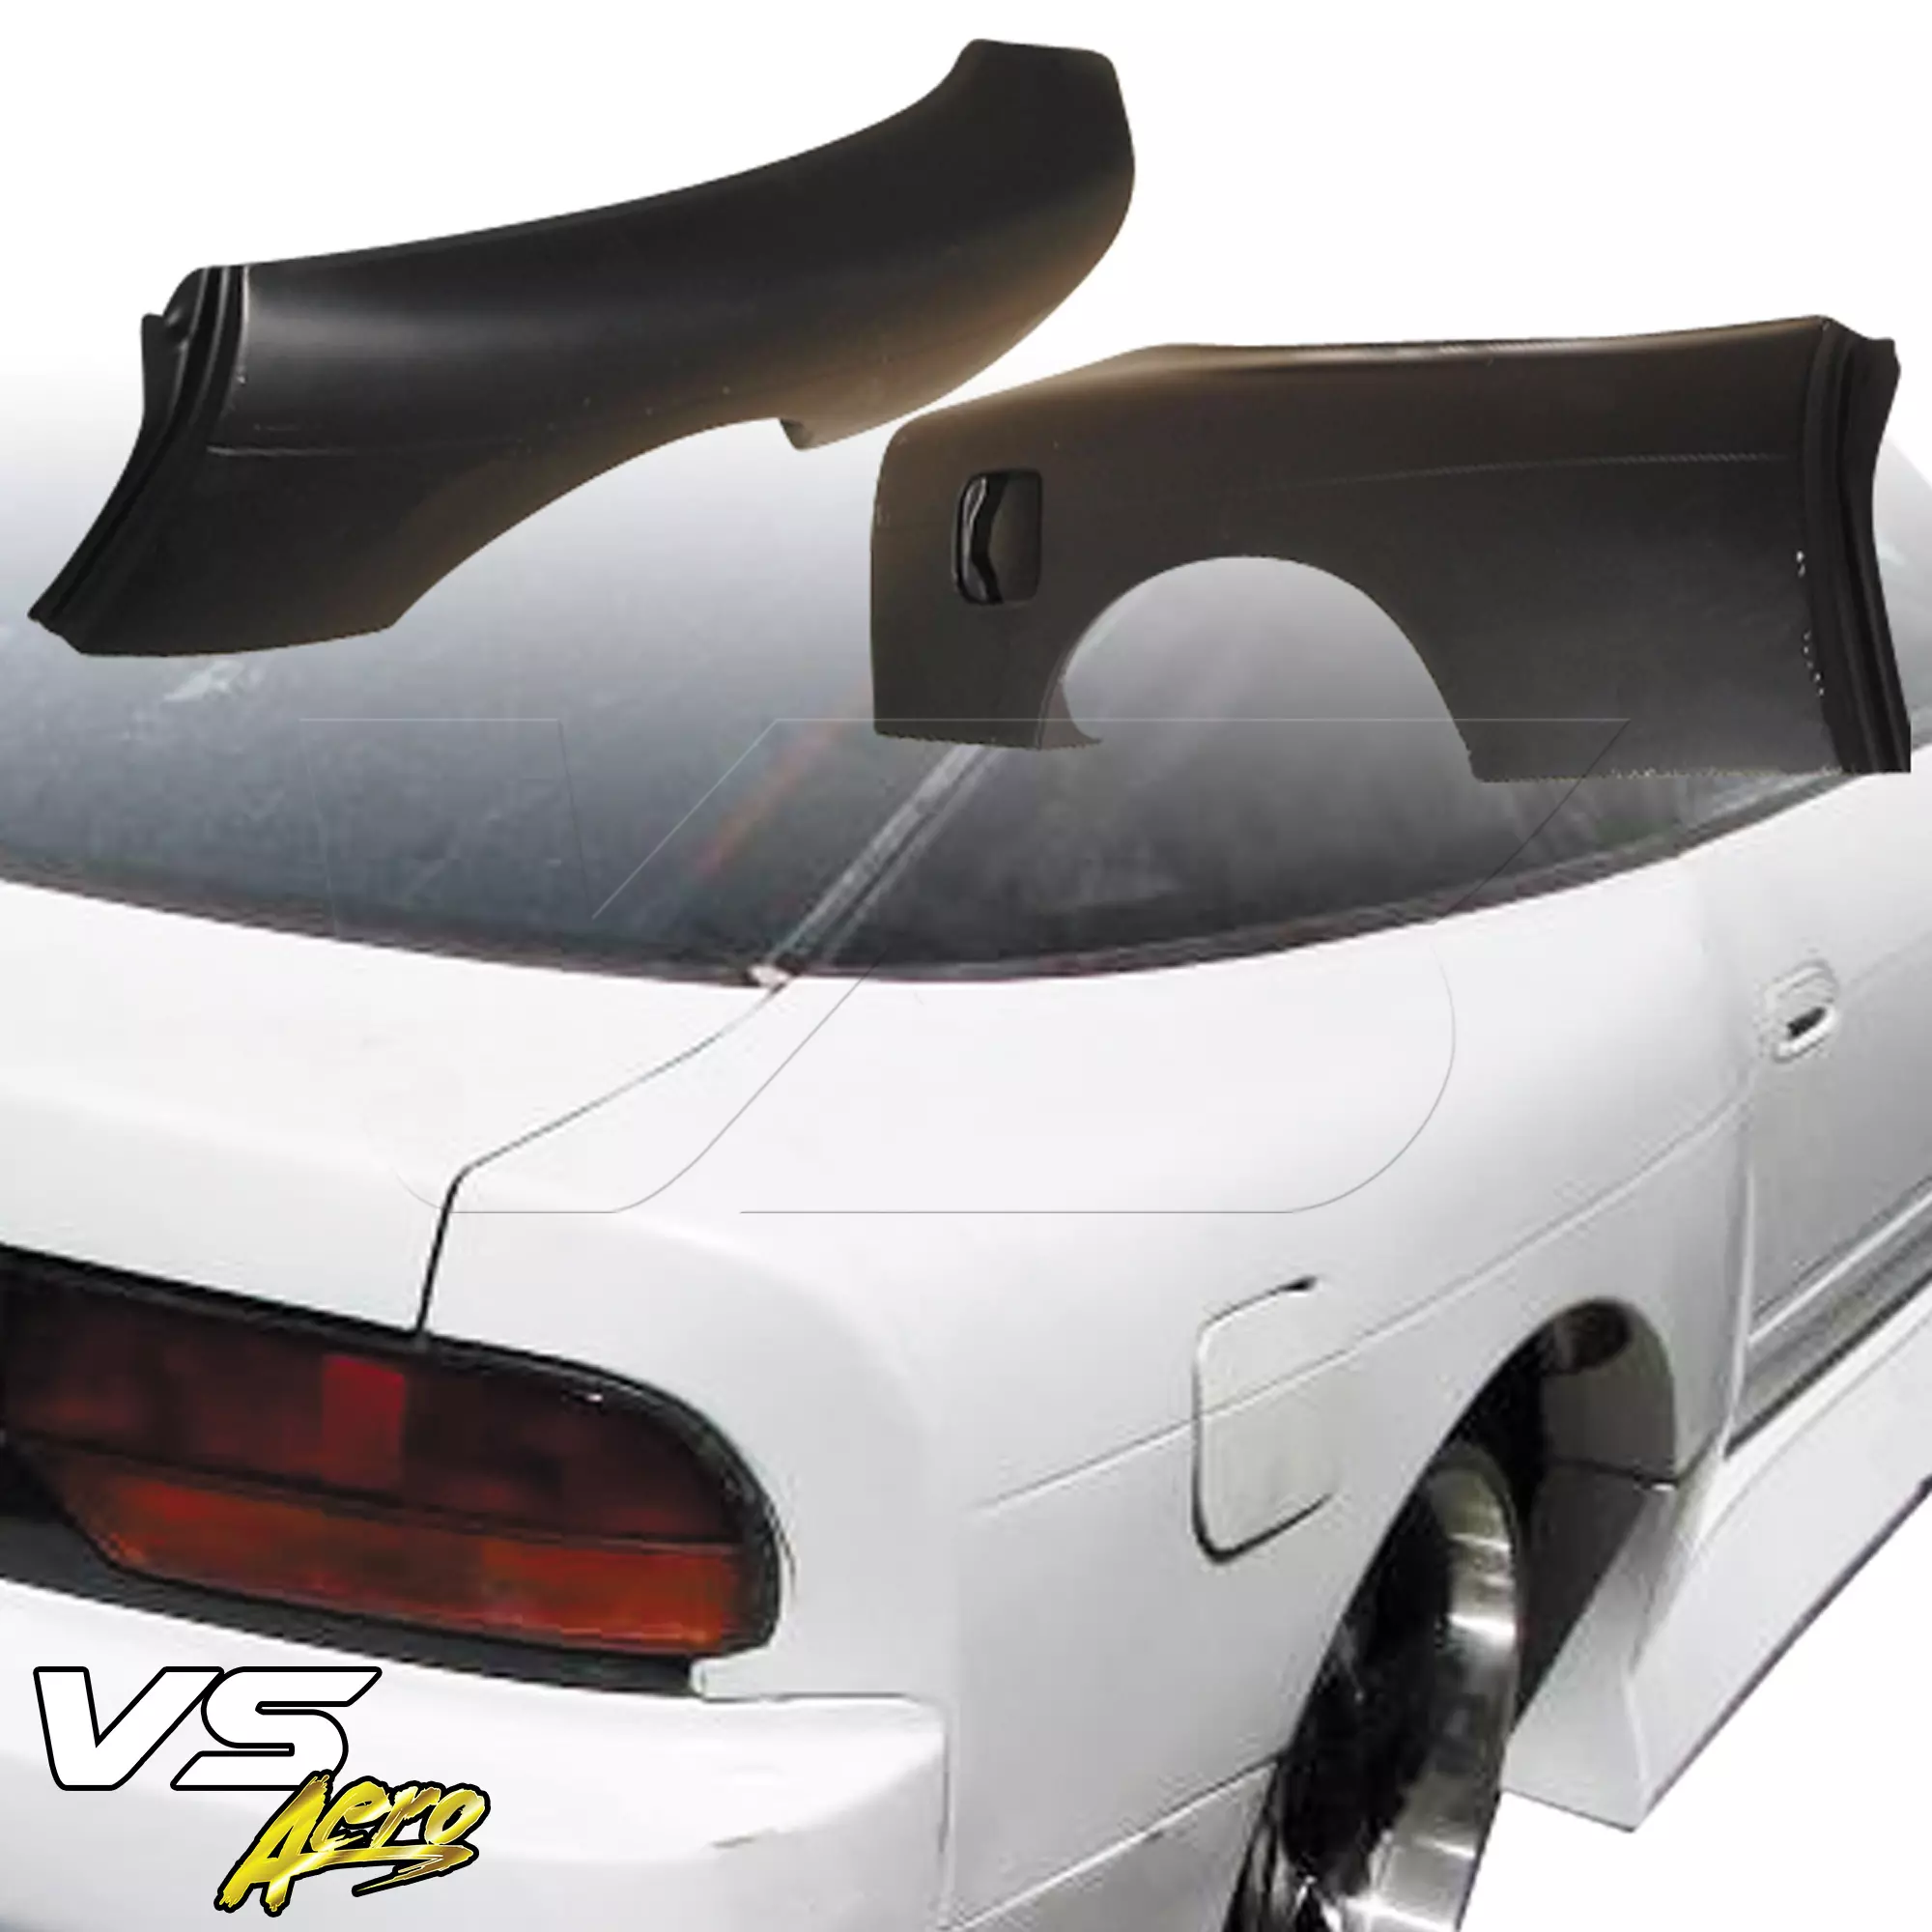 VSaero FRP BSPO Blister Wide Body 70mm Fenders (rear) > Nissan 240SX 1989-1994 > 3dr Hatch - Image 9